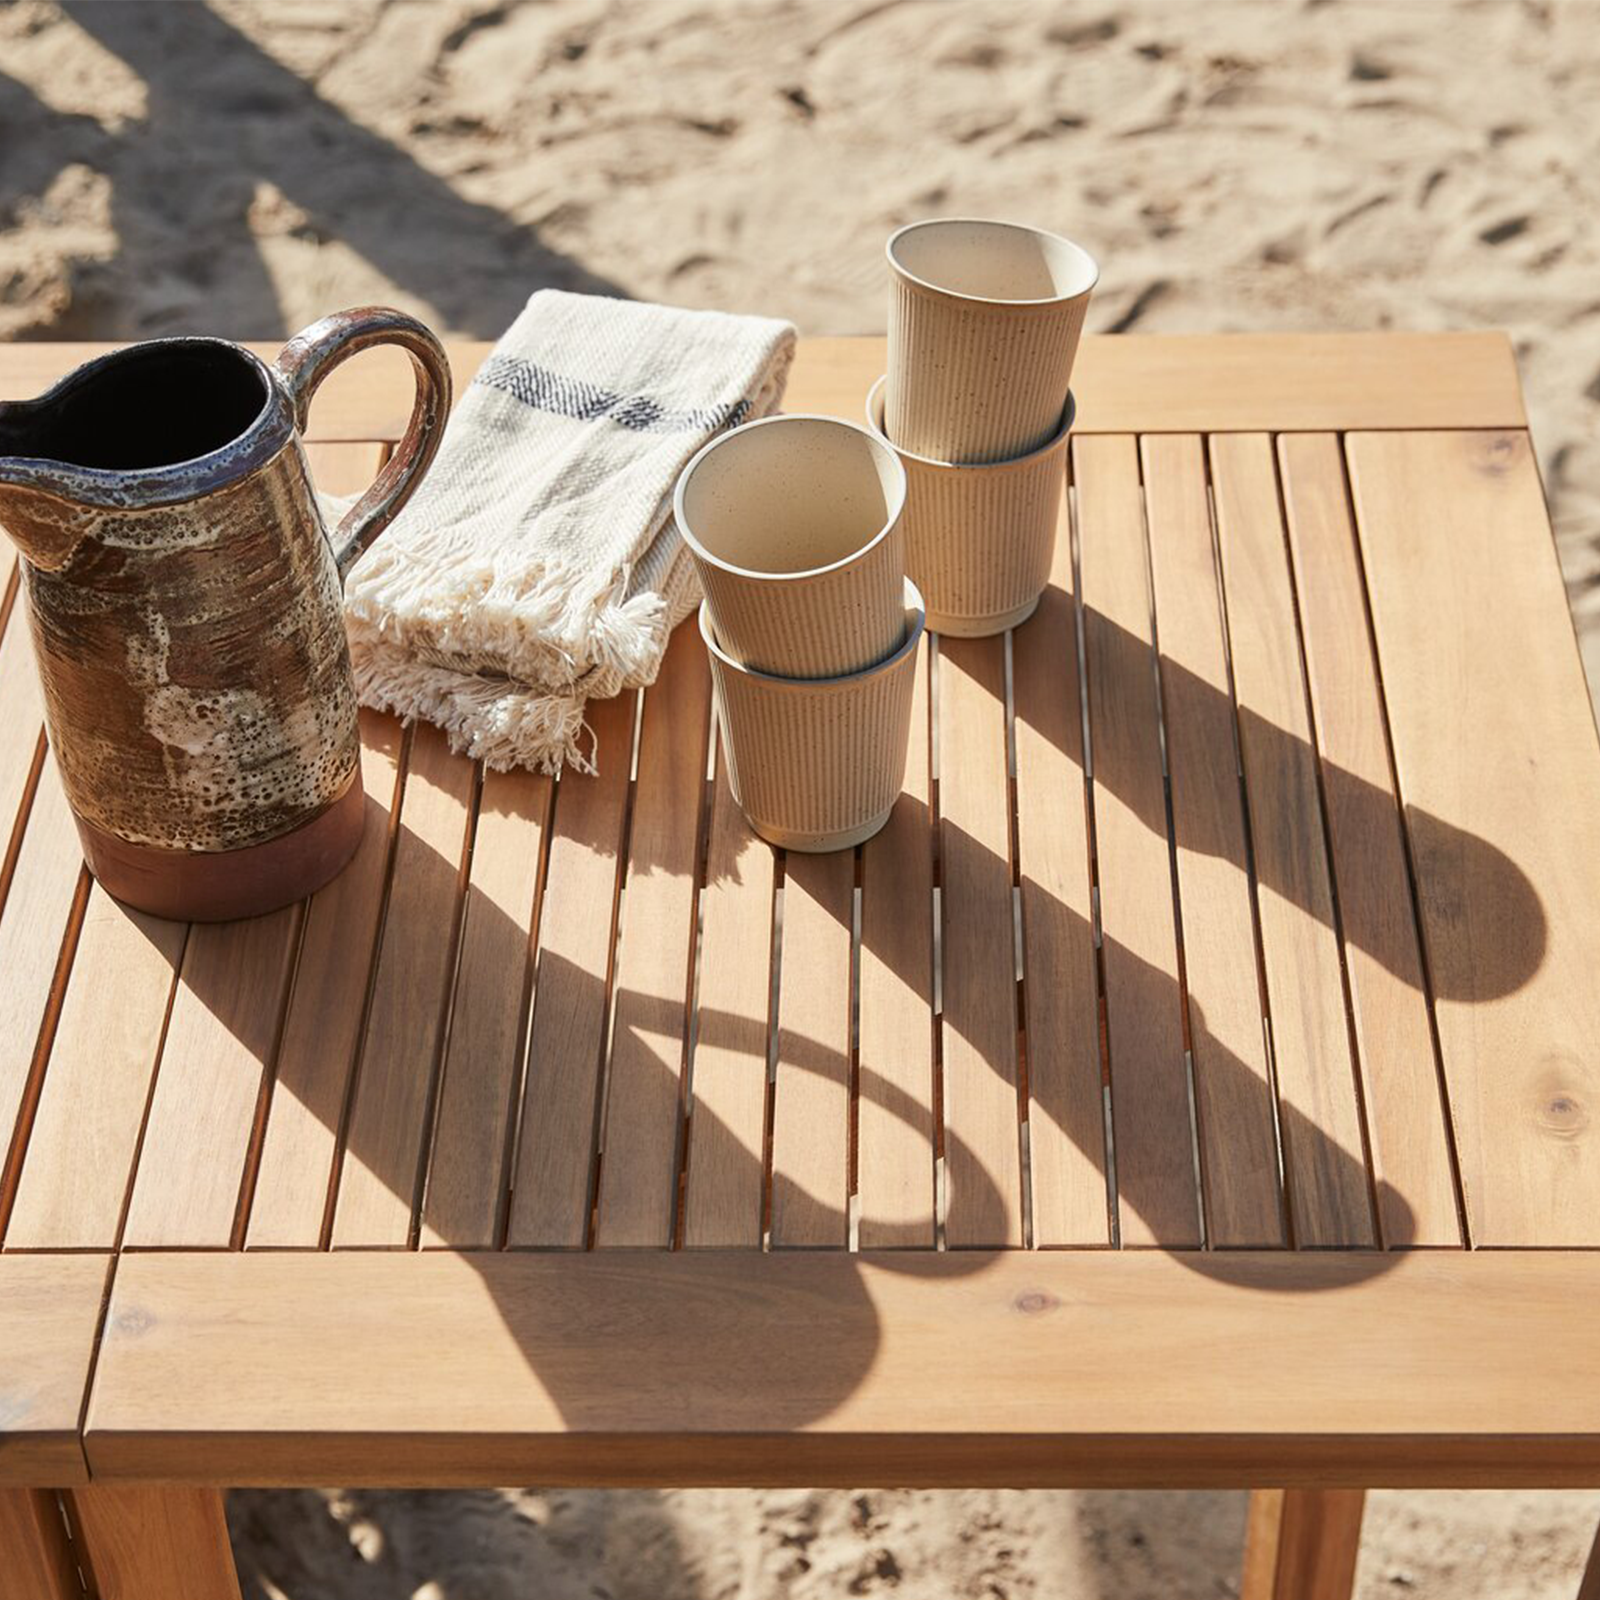 Tavolo da pranzo Royal in legno massello per giardino pieghevole o con foro porta ombrellone